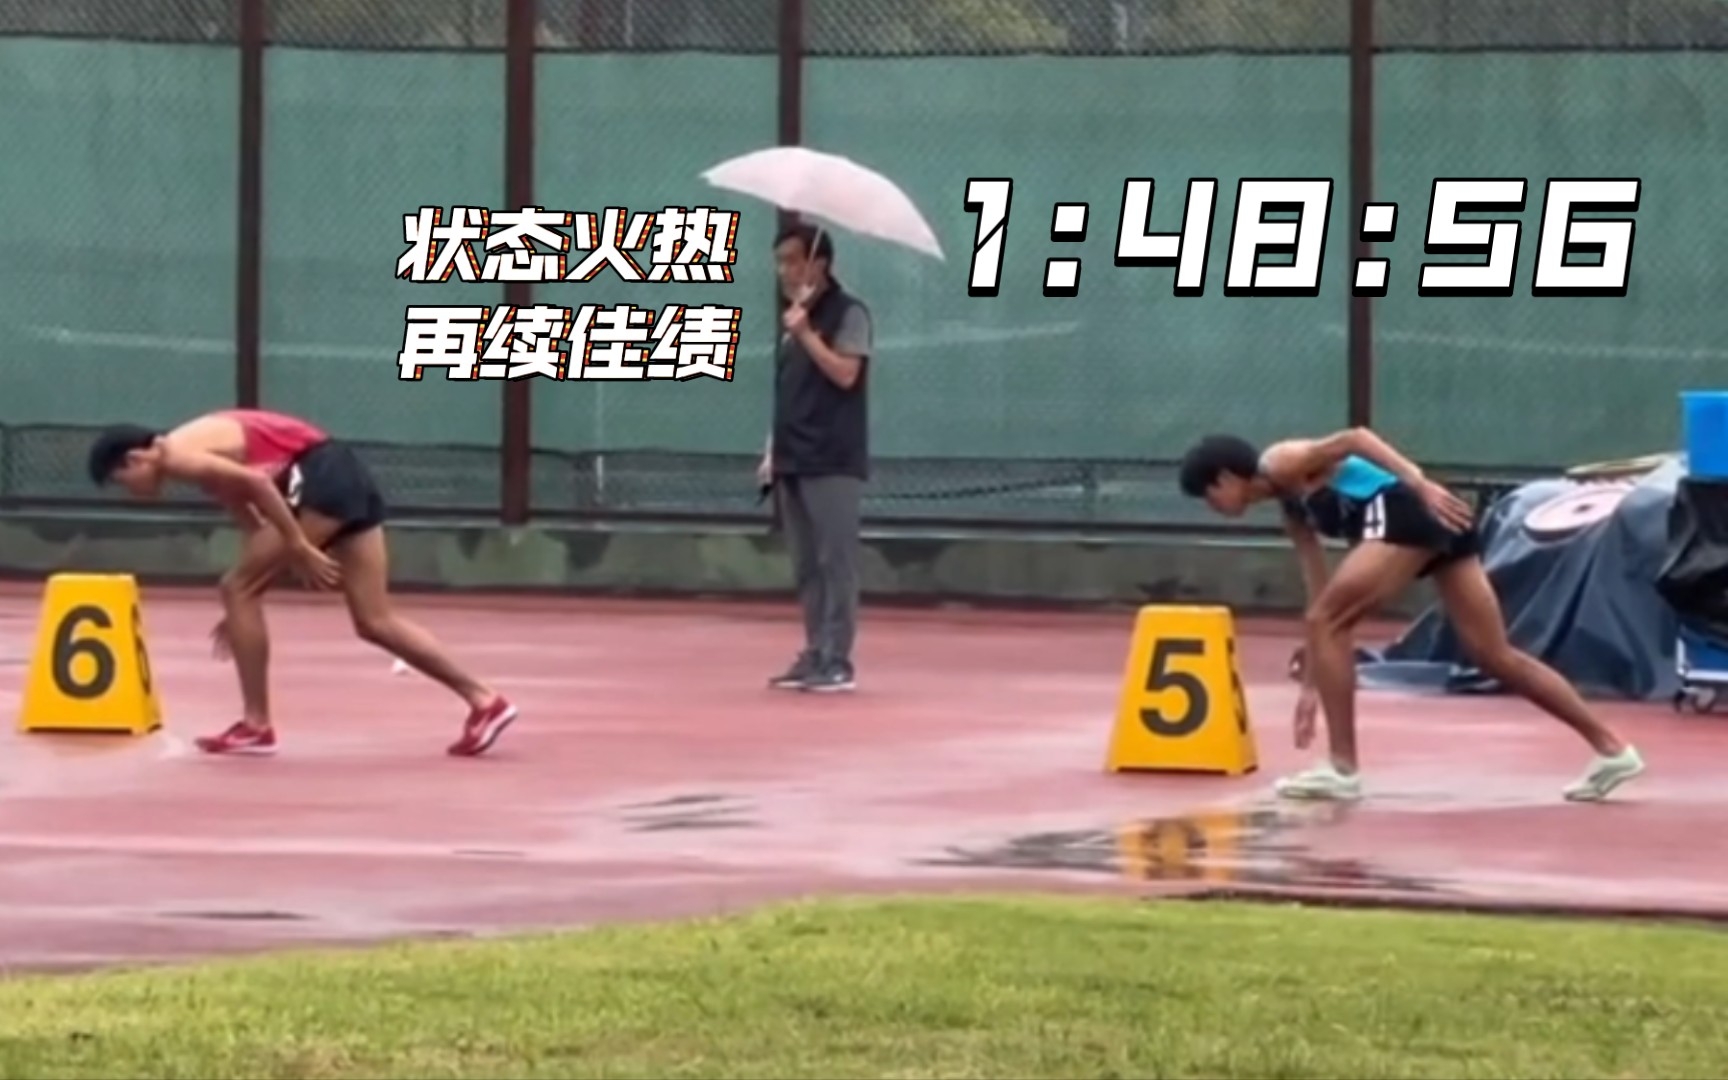 刘德助在800米上再创佳绩1:48:56